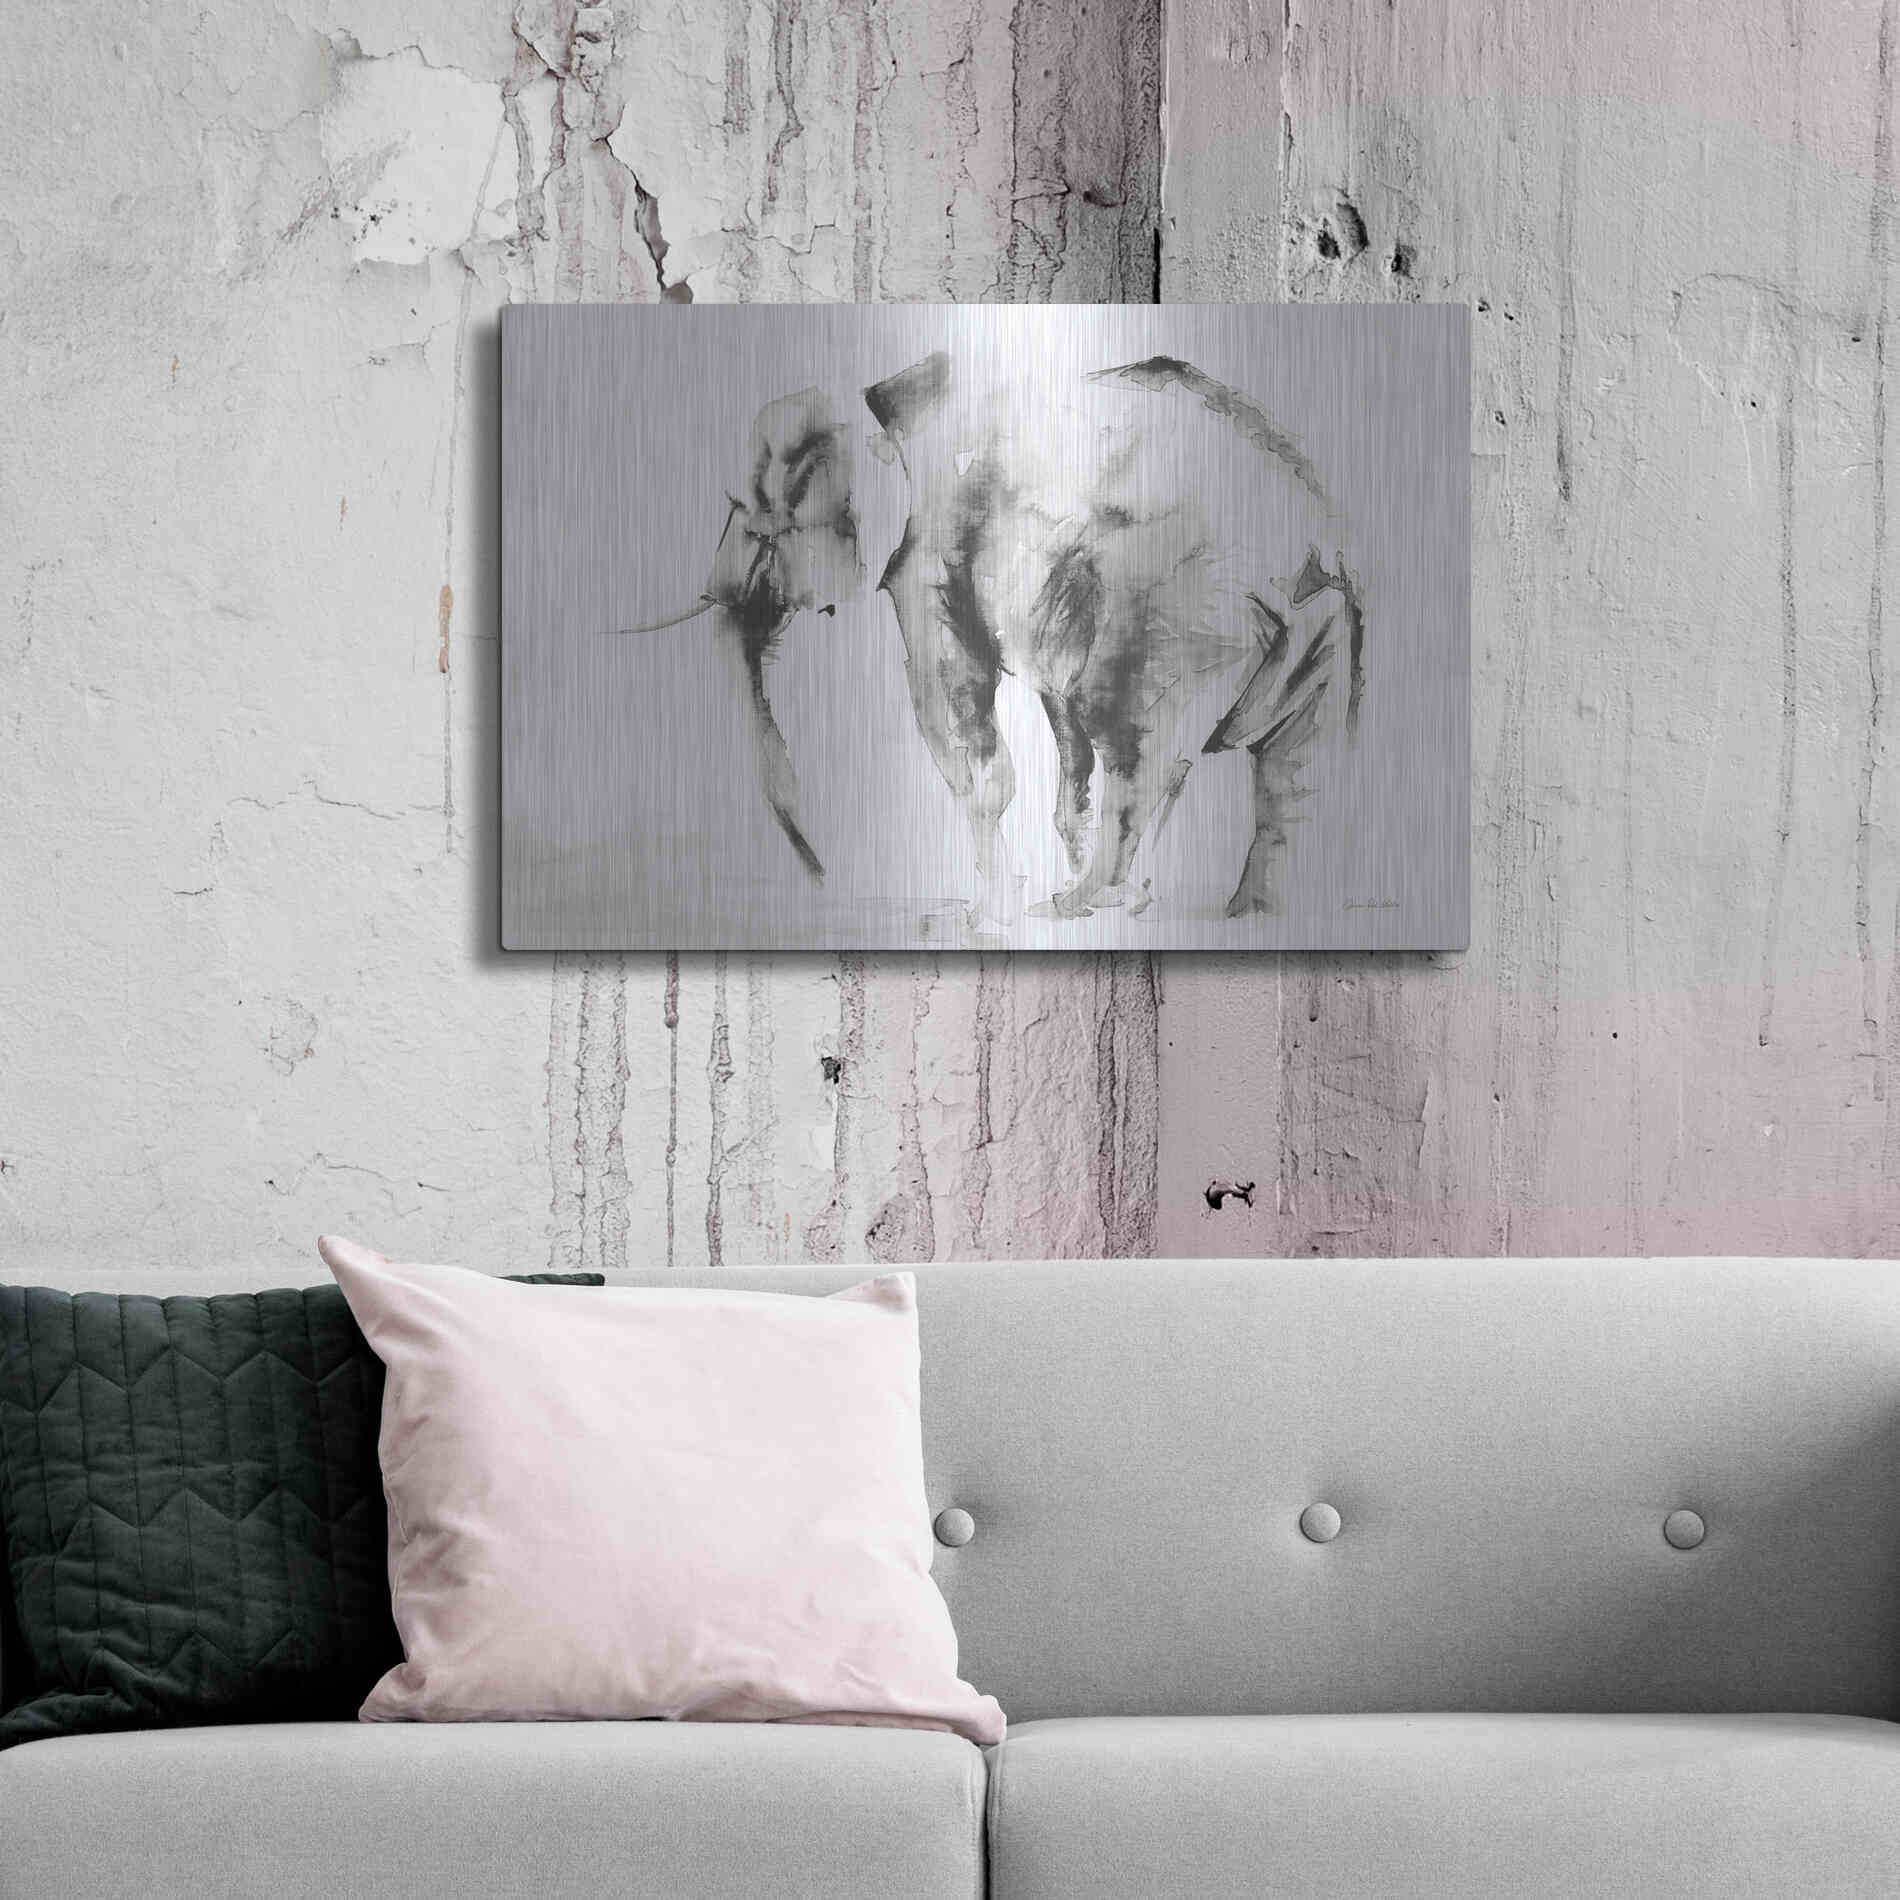 Luxe Metal Art 'Lone Elephant Gray' by Alan Majchrowicz, Metal Wall Art,36x24